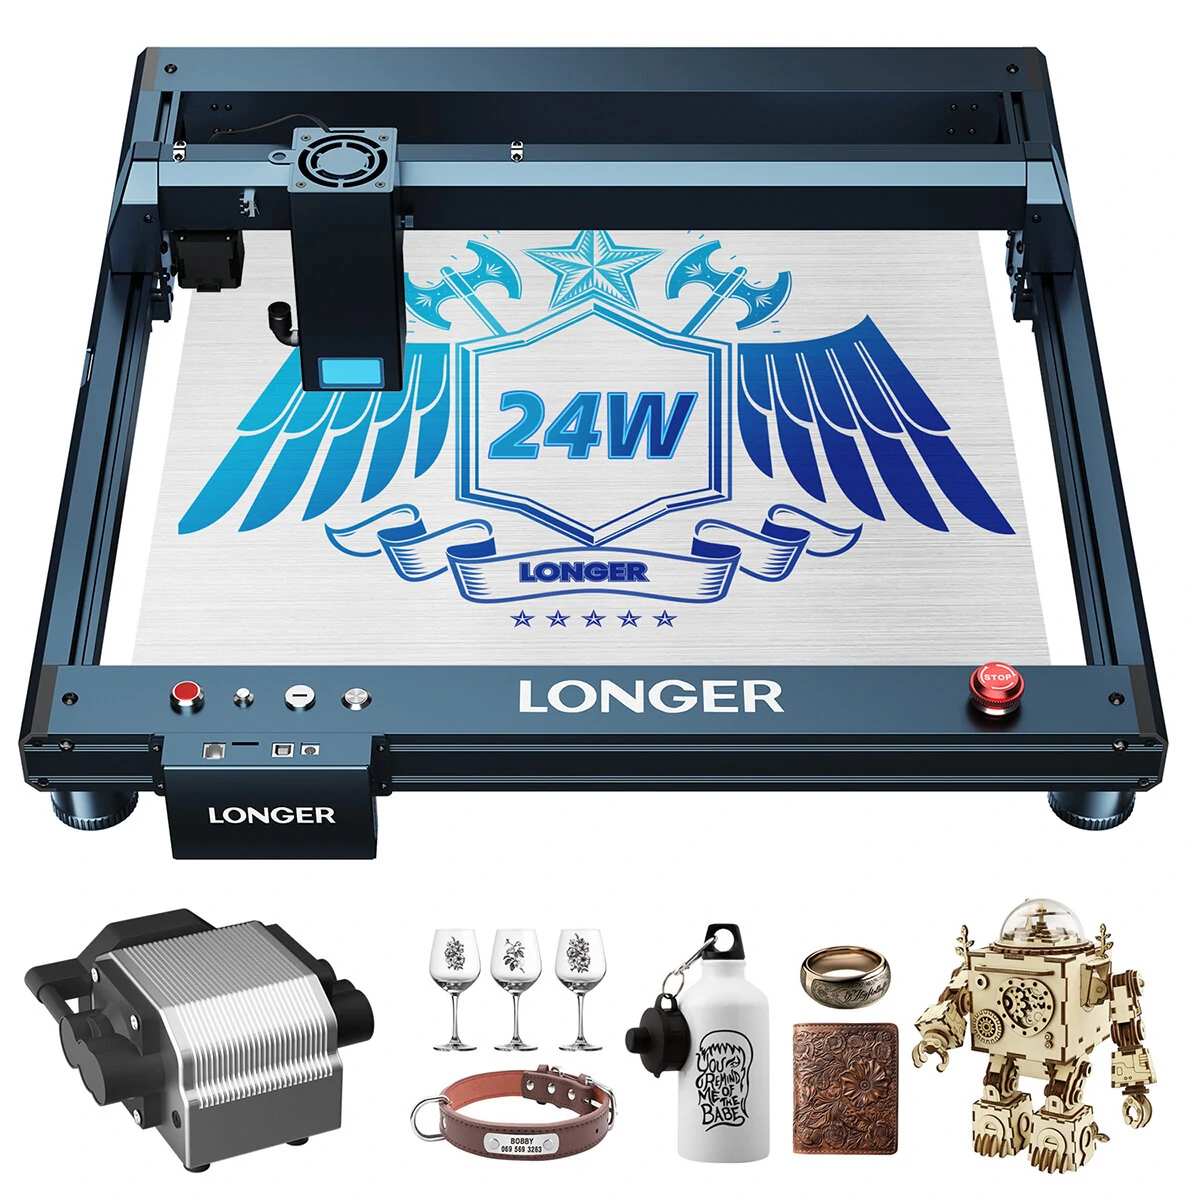 Longer B1 20W Laser Engraver Cutter Banggood Coupon Promo Code (CZ,USA Warehouse)